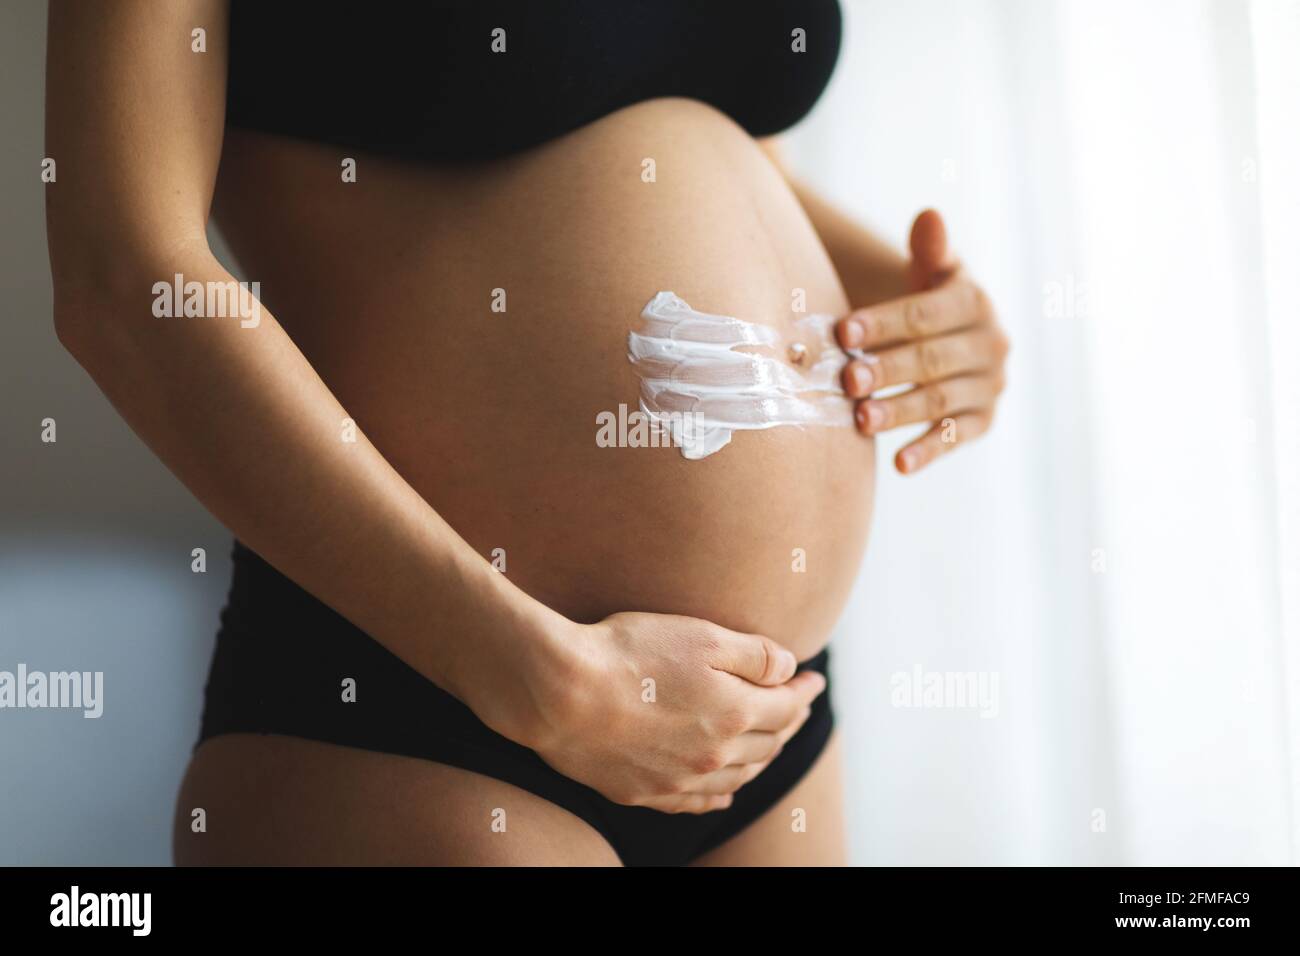 Femmes enceintes mettant la crème anti-étirement sur son ventre. Cosmétique pour hydrater ou hydrater la peau pendant la grossesse. Banque D'Images